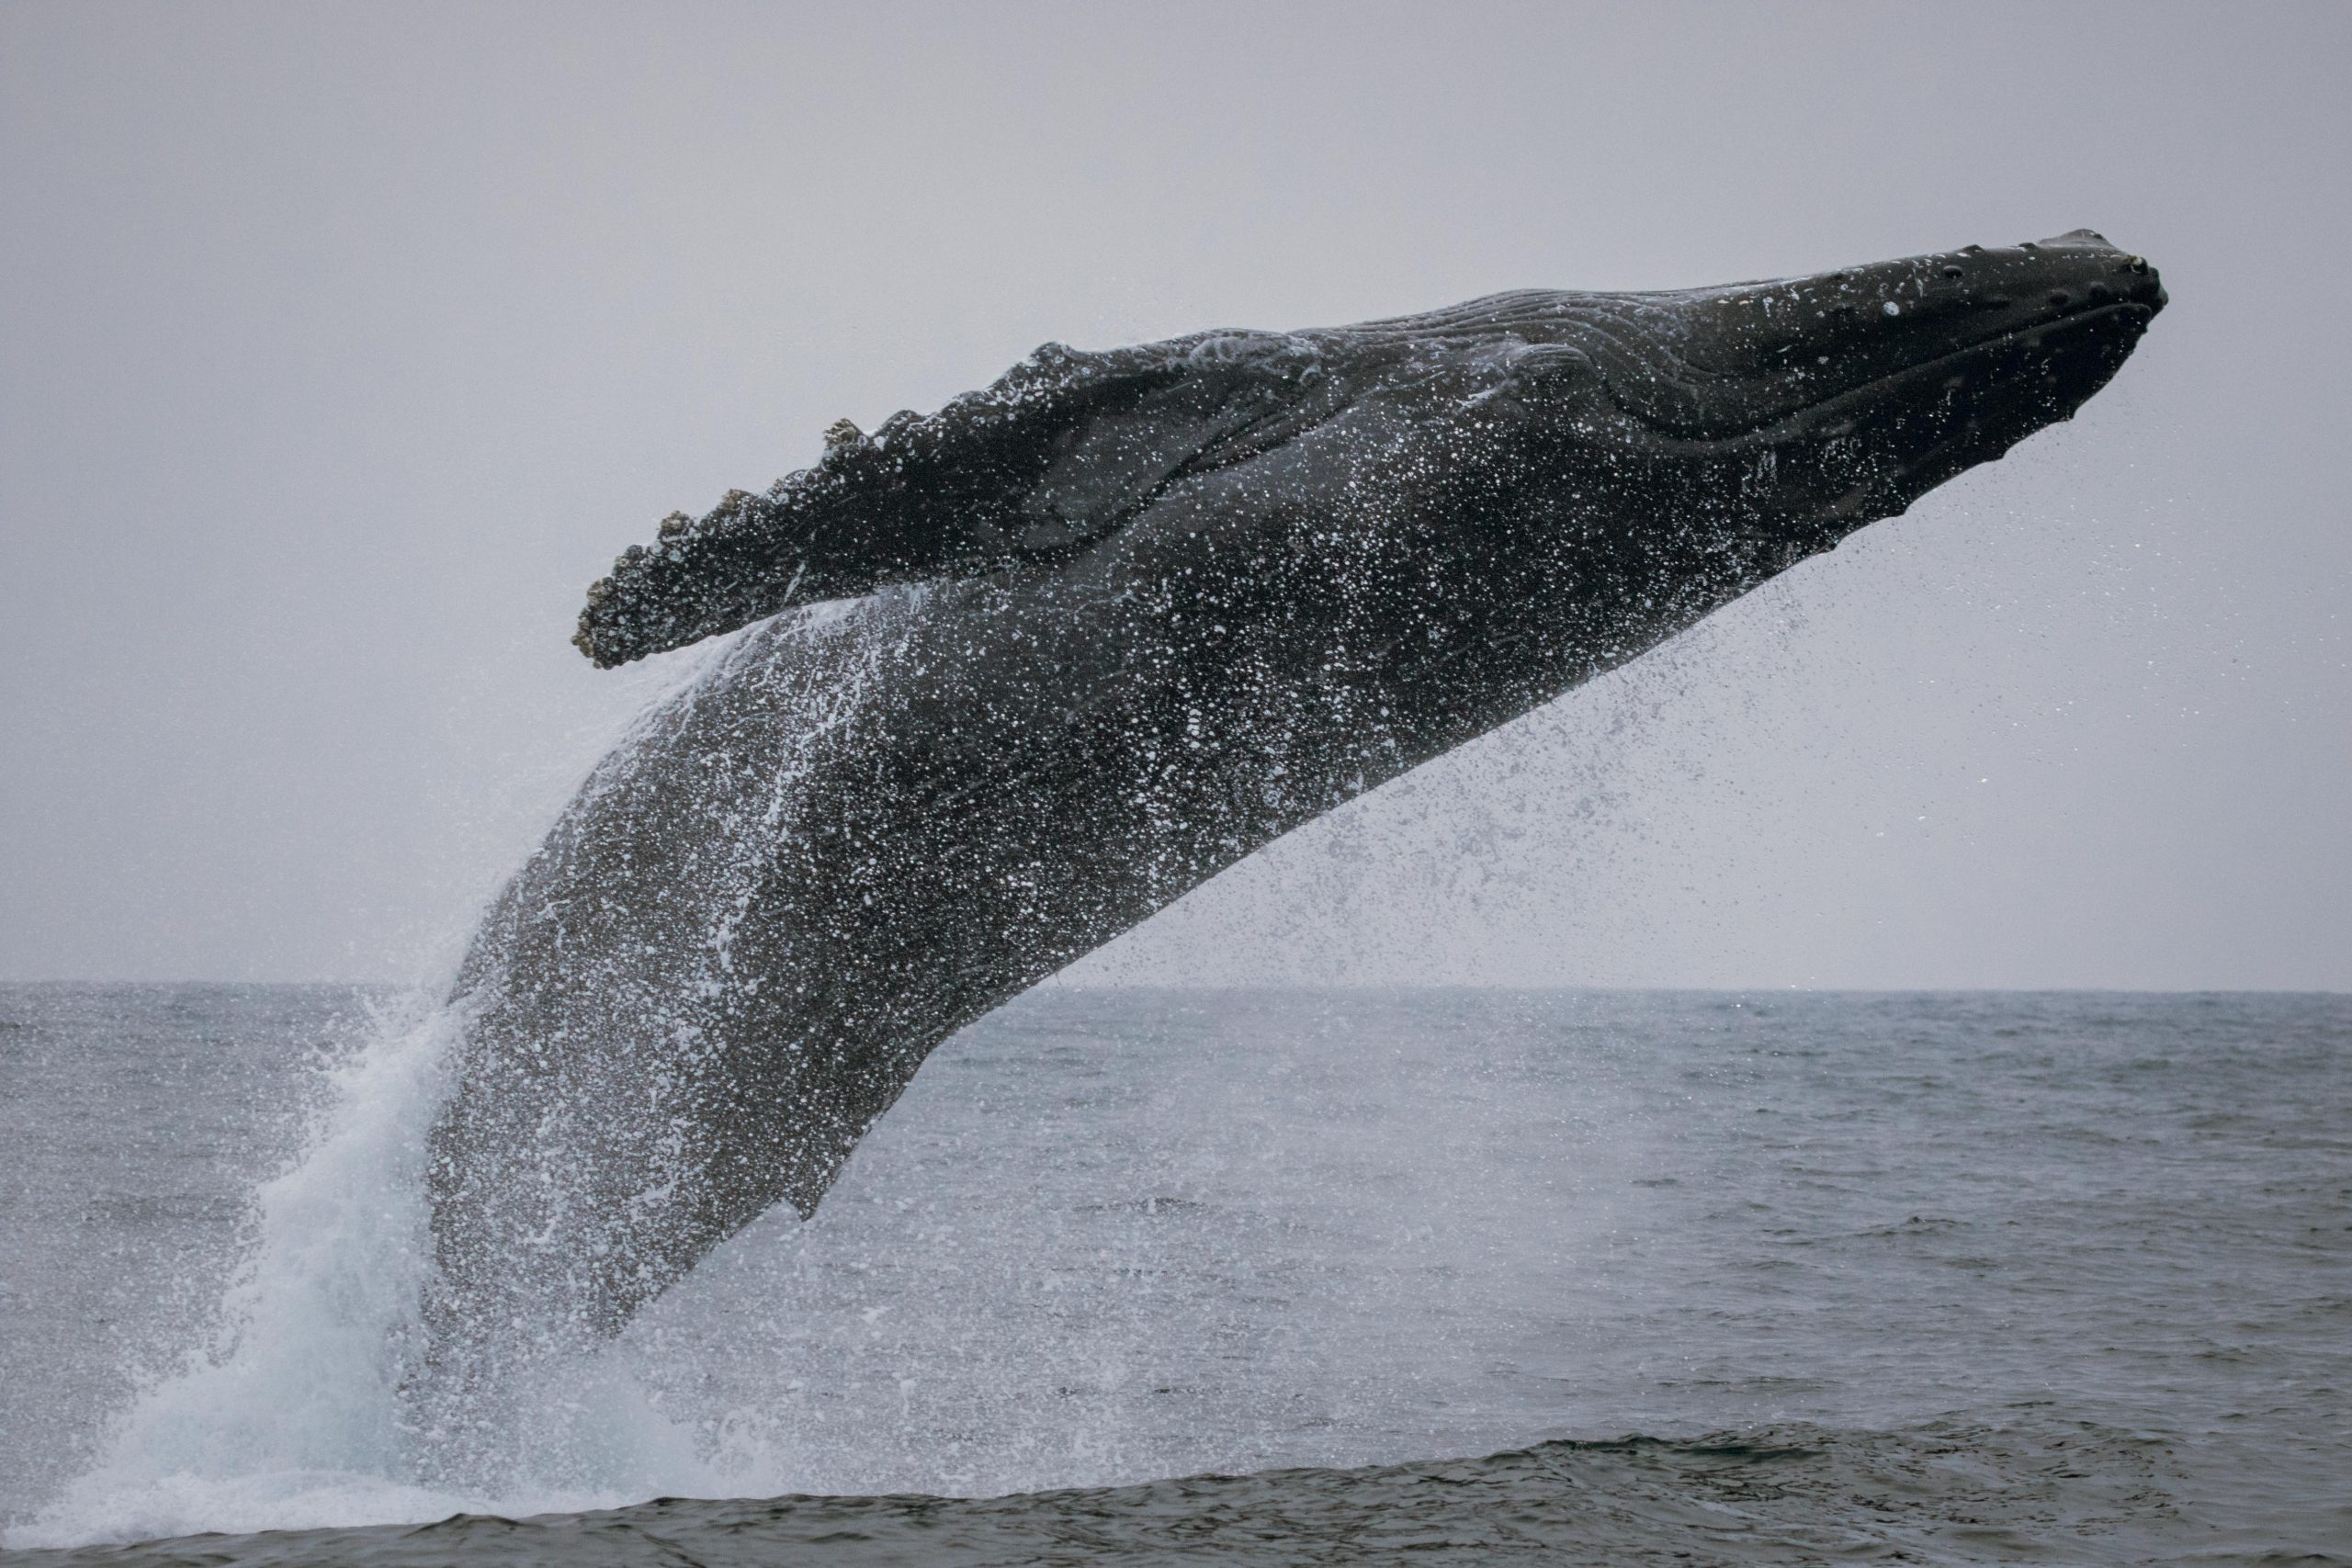 fin whale breaching